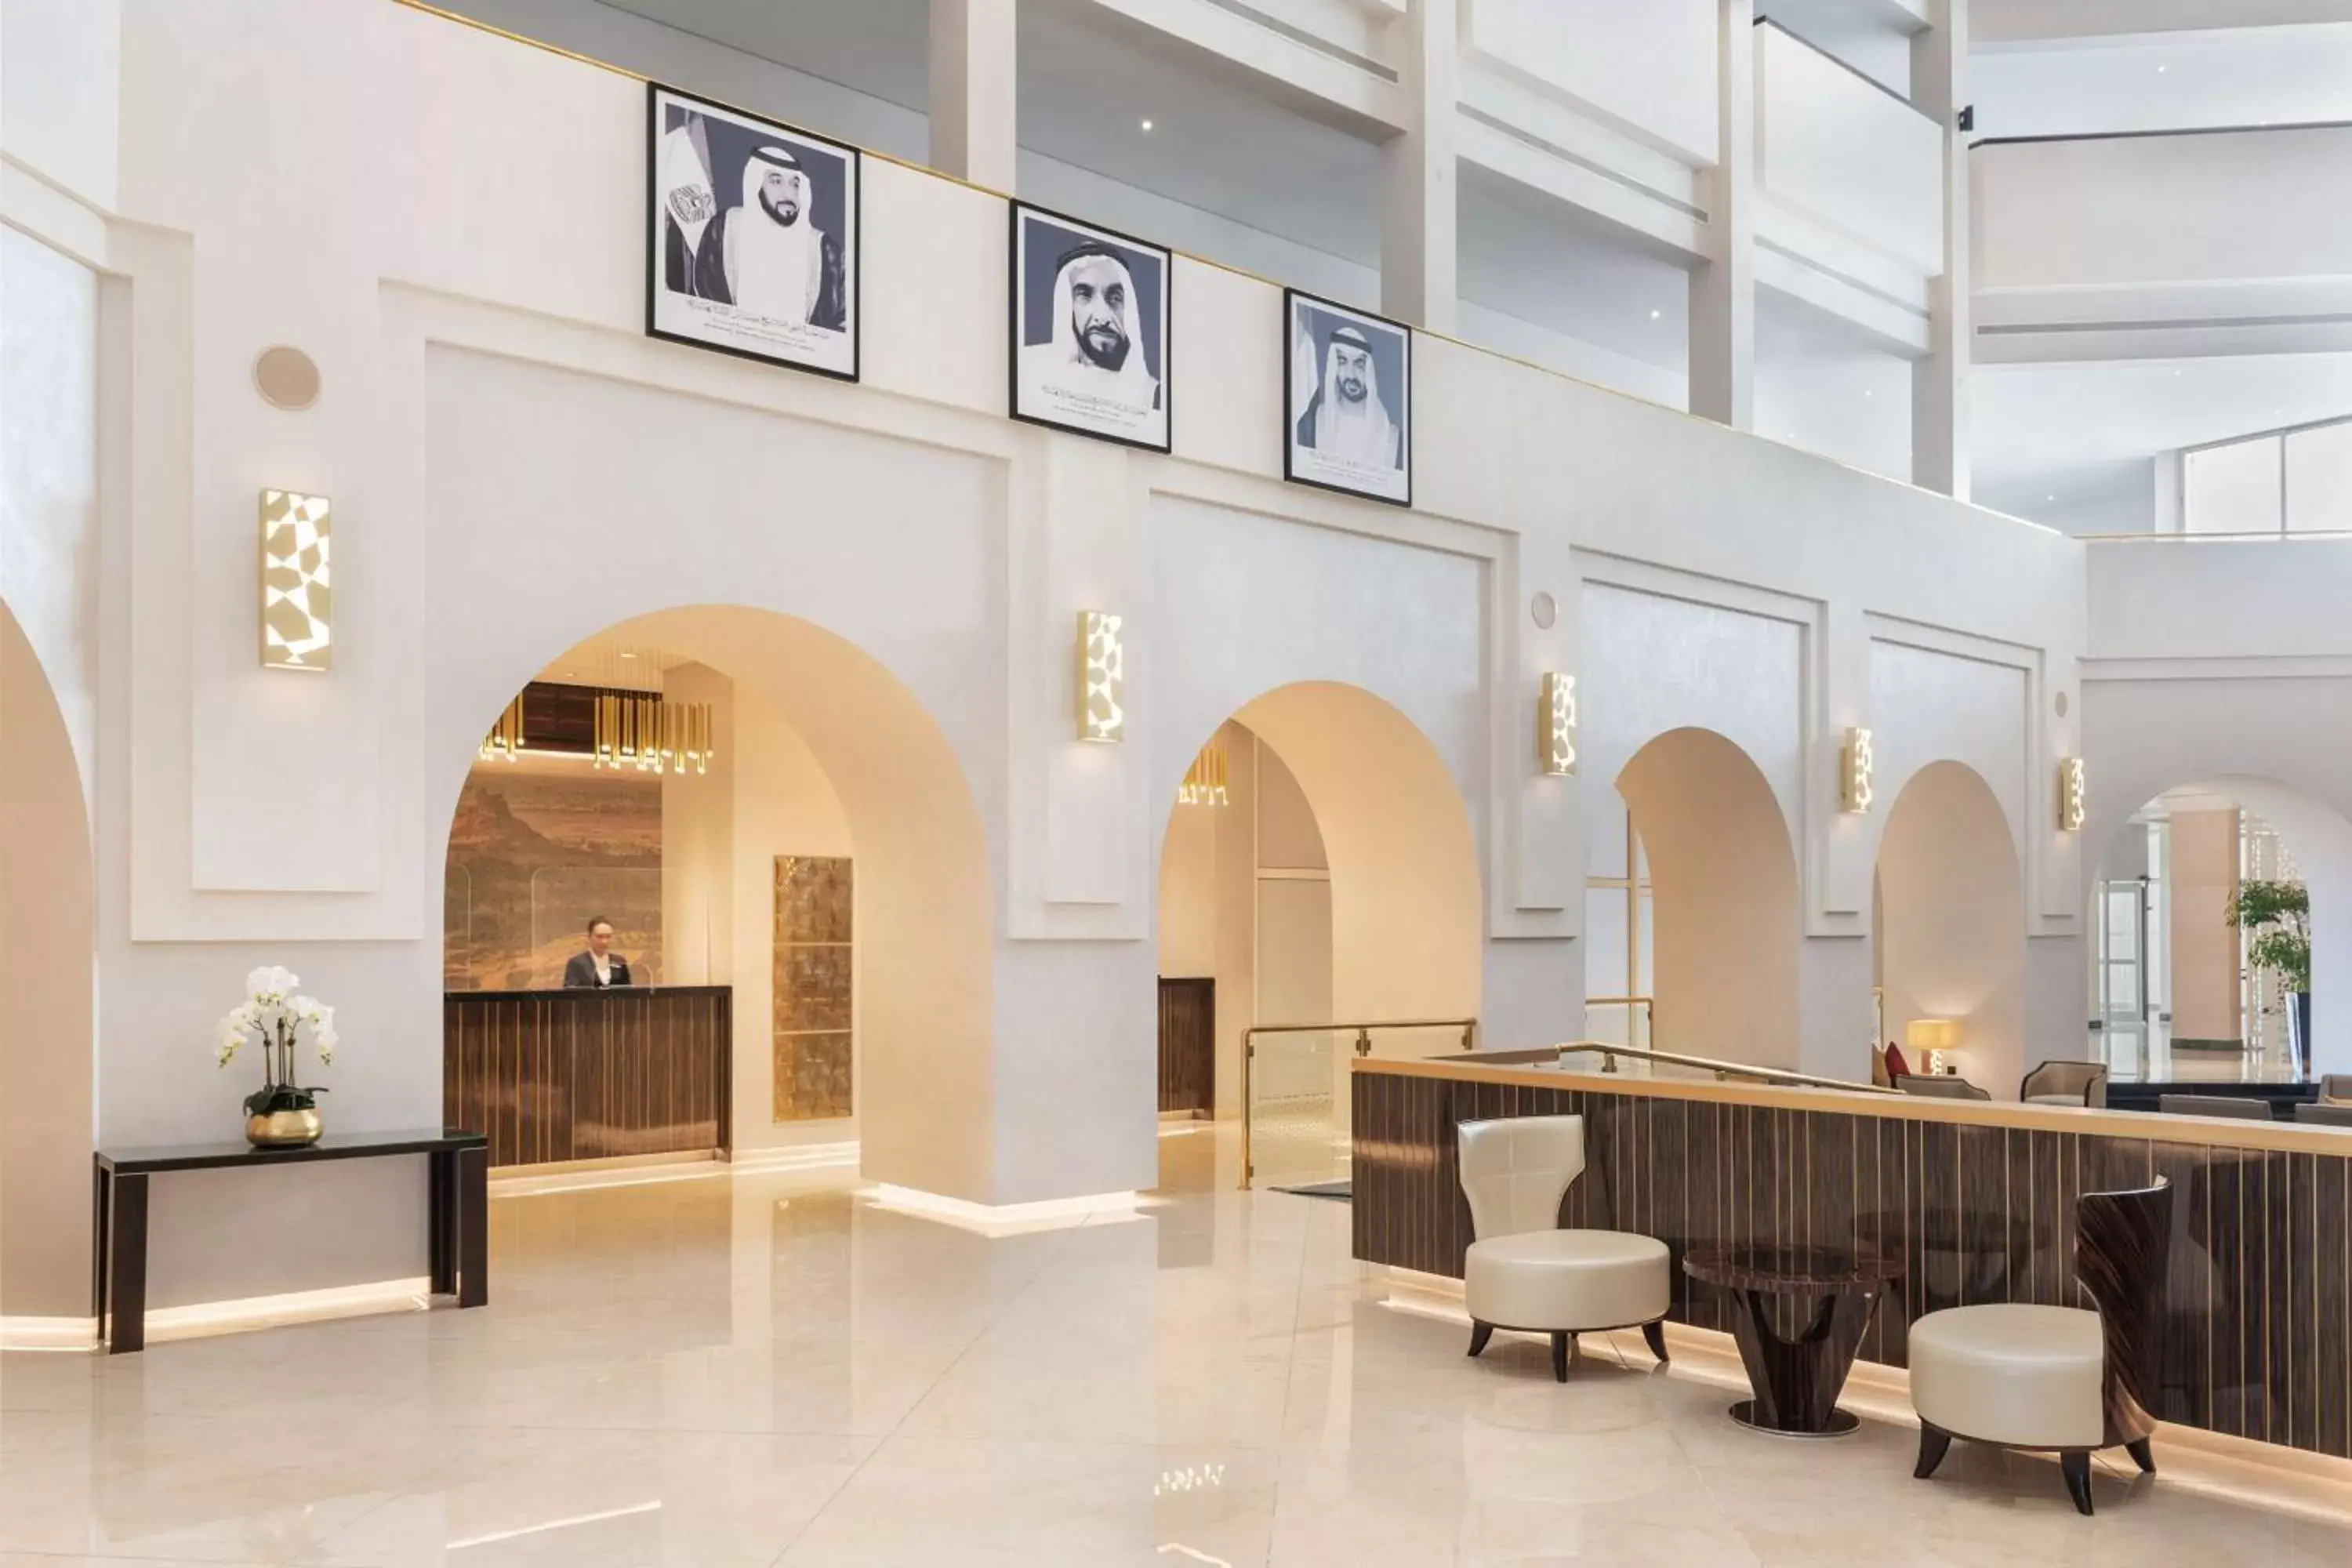 Lobby or reception in Radisson Blu Hotel & Resort, Al Ain